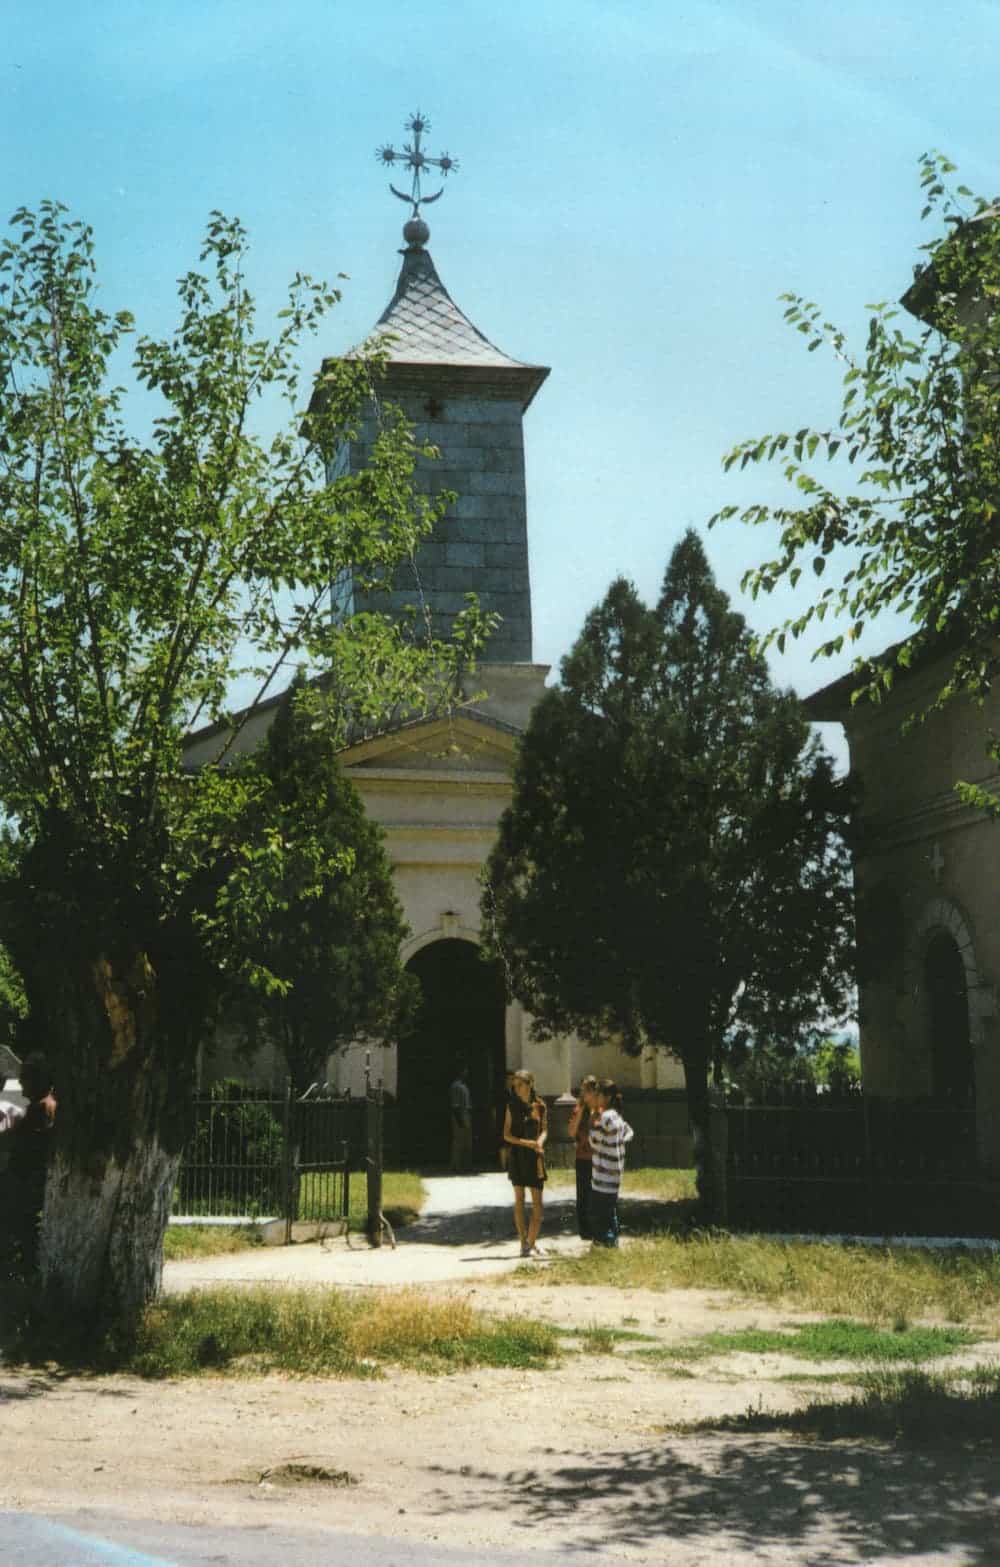 Ο Άγιος Παντελεήμων στη Βεντέα κτίστηκε το 1835 από τον Απόστολο Αρσάκη εις μνήμην τού αυτόχειρος υιού του Γεωργίου και τής Εβραίας μνηστής του, μετά την άρνηση τού Αρσάκη να δεχθεί τον γάμο τους 